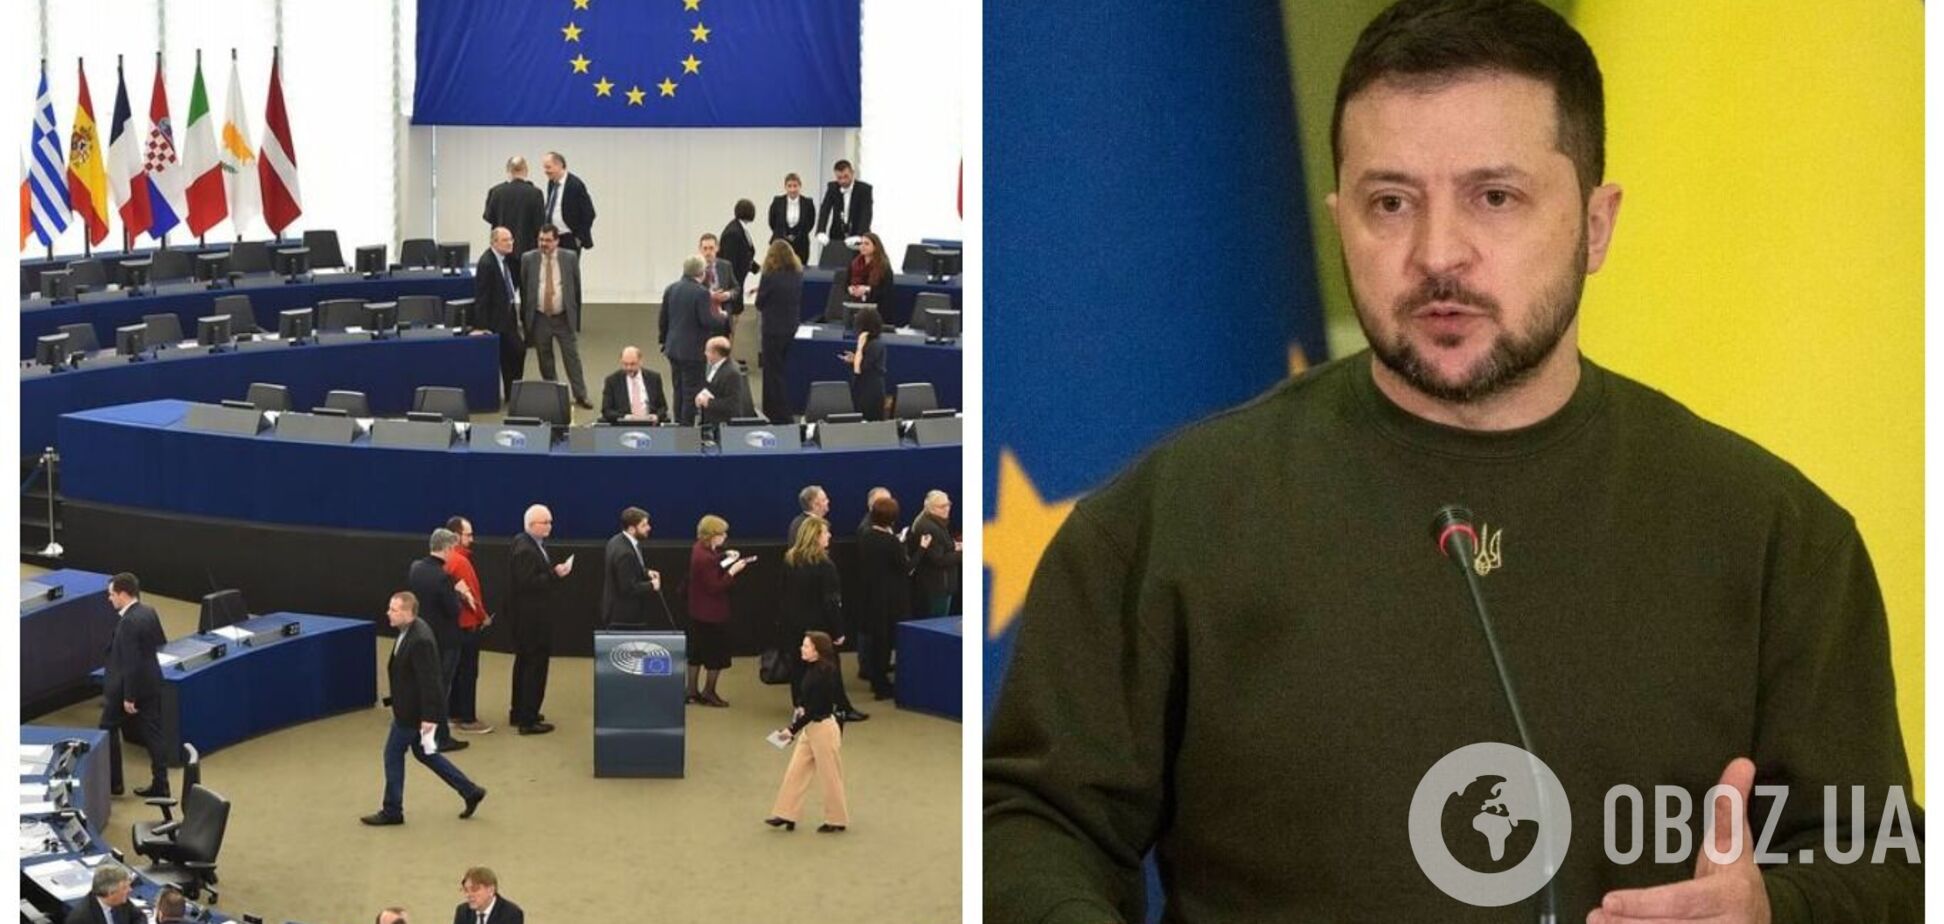 Зеленский прибыл в Европарламент, где должен выступить с речью. Фото, видео и все подробности